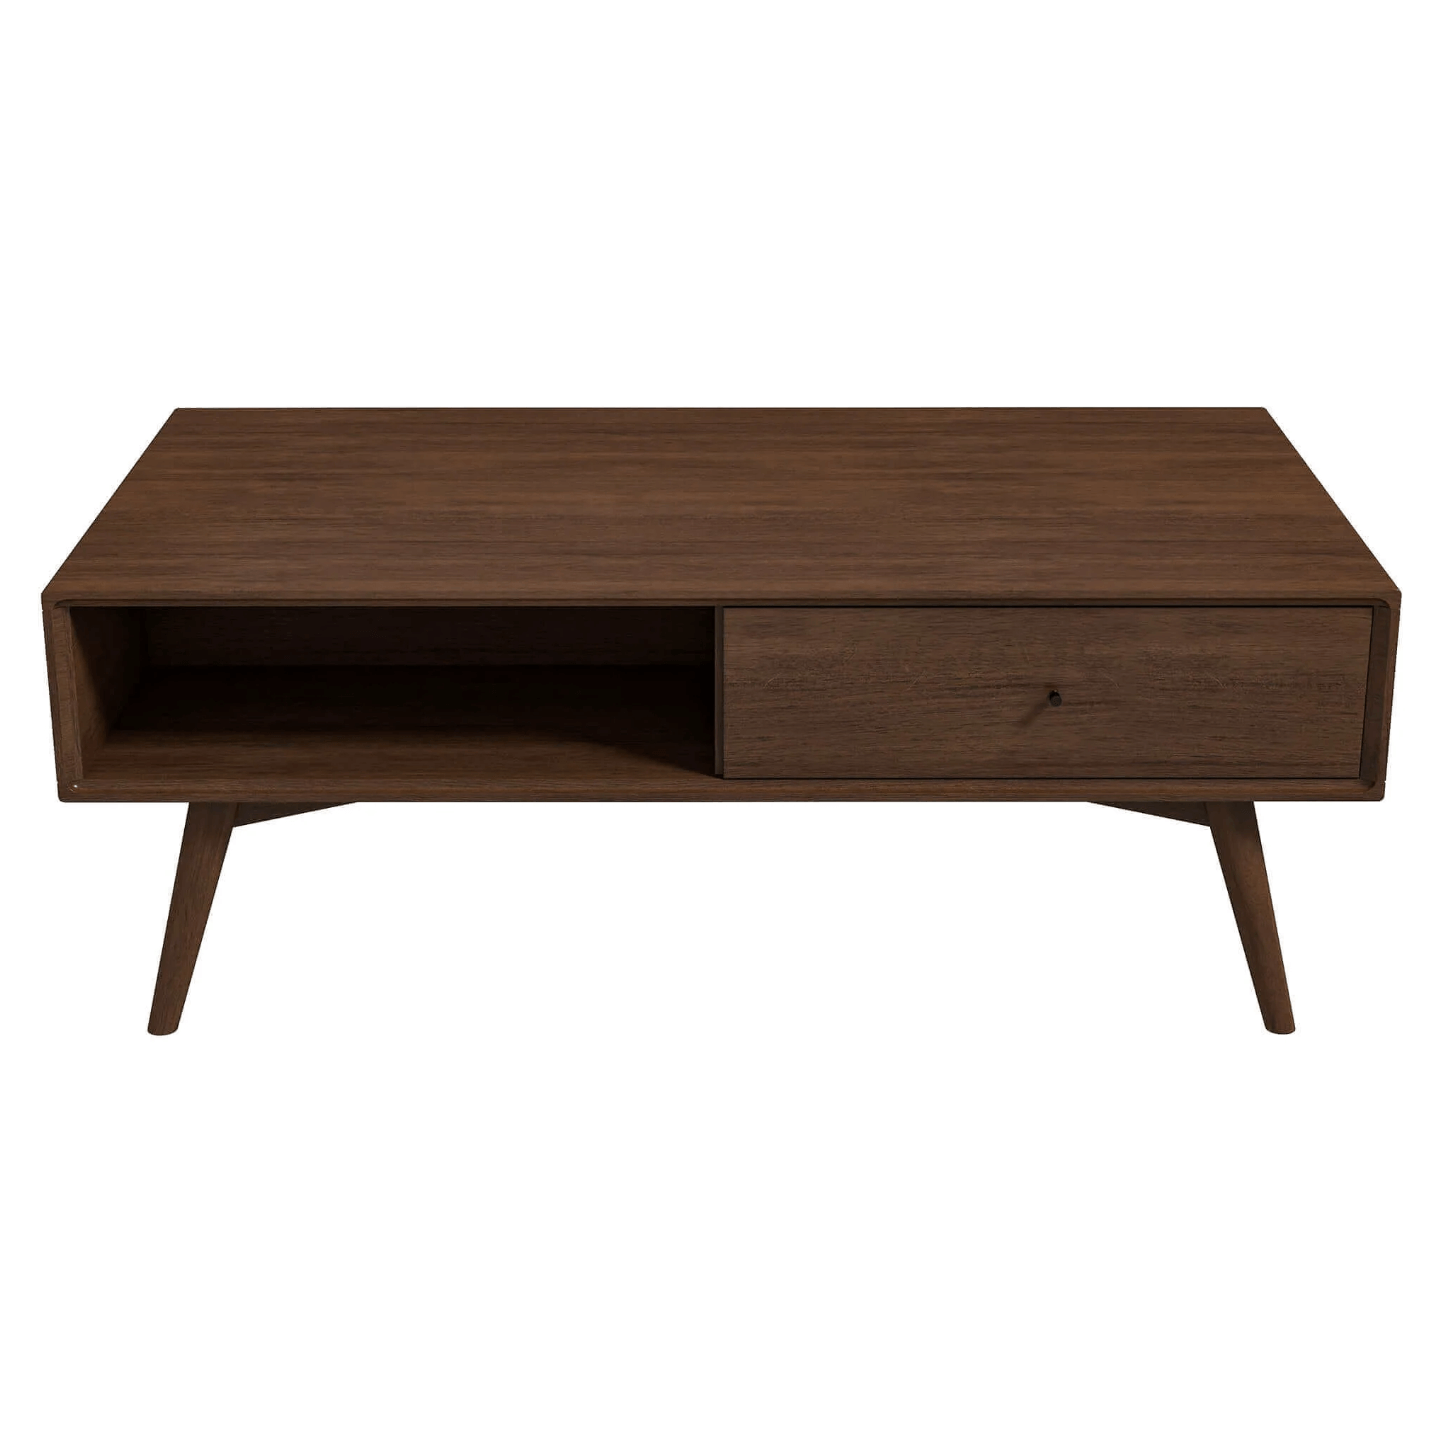 Caroline MCM Teak Solid Wood Coffee Table 48" - Revel Sofa 